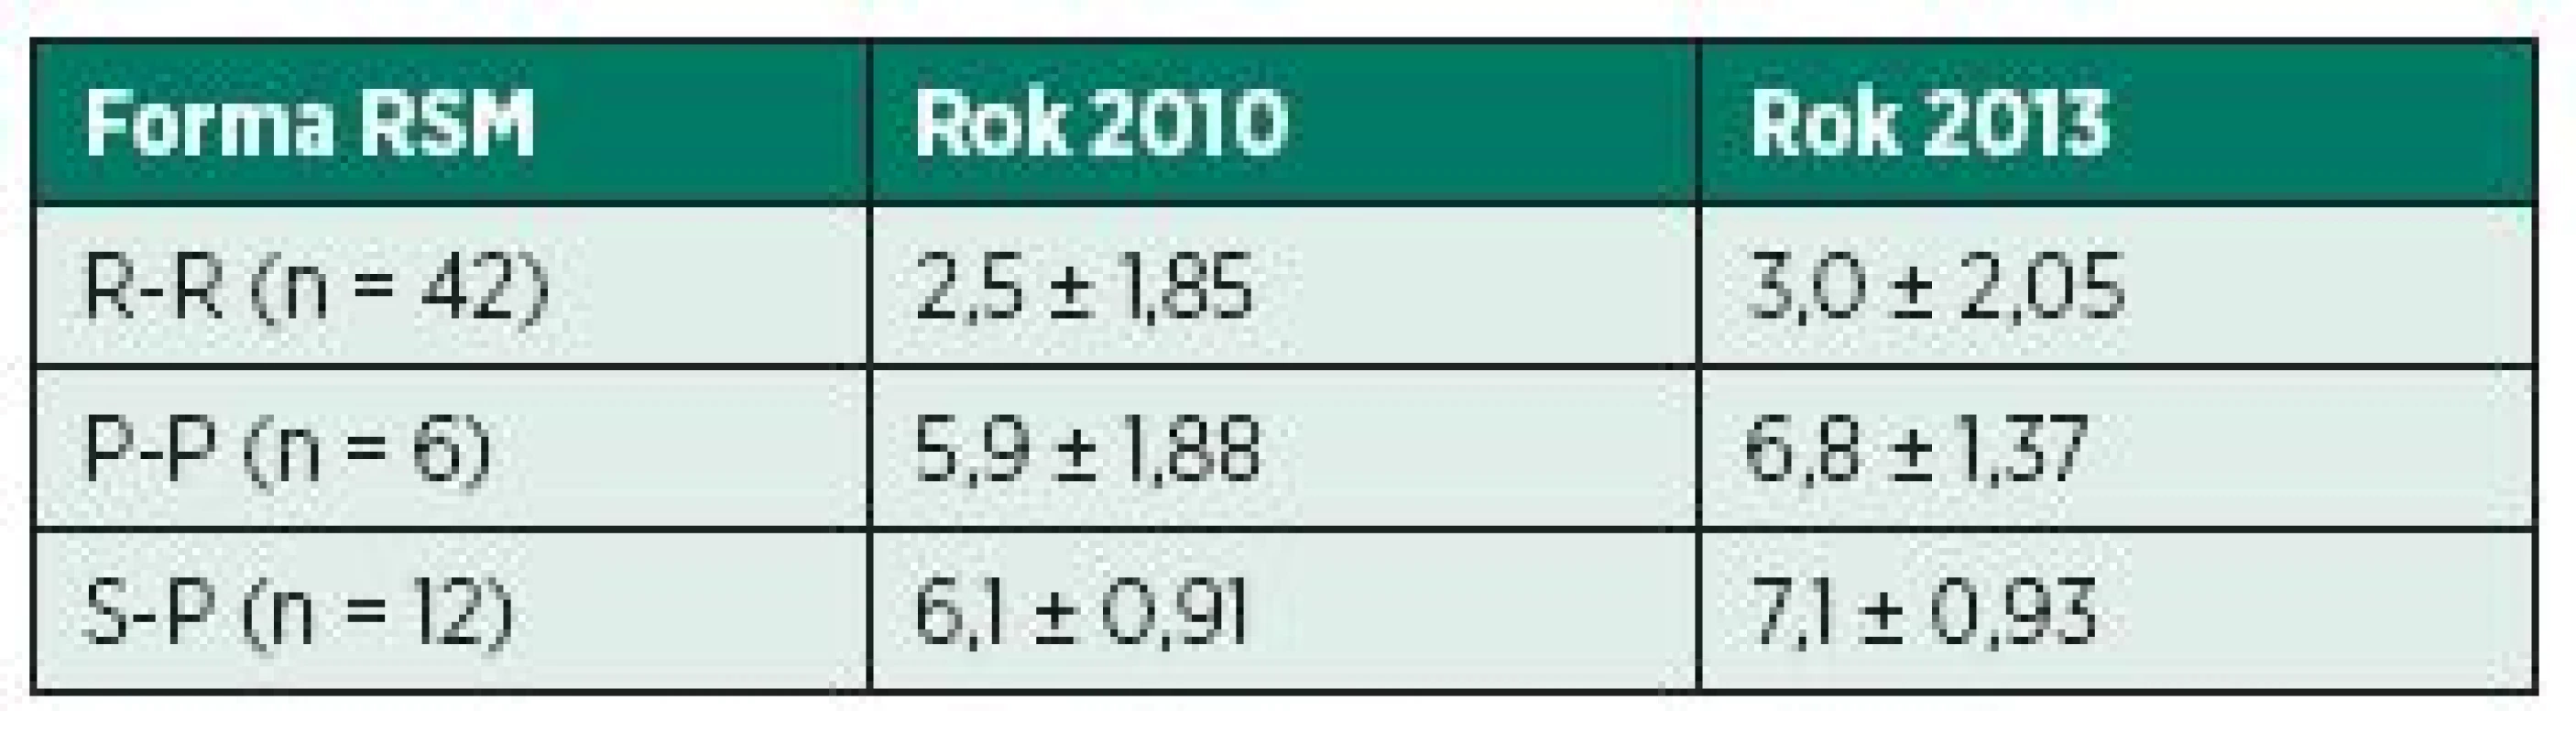 Porovnání stupně EDSS pro různé formy RSM v roce 2010 a 2013.